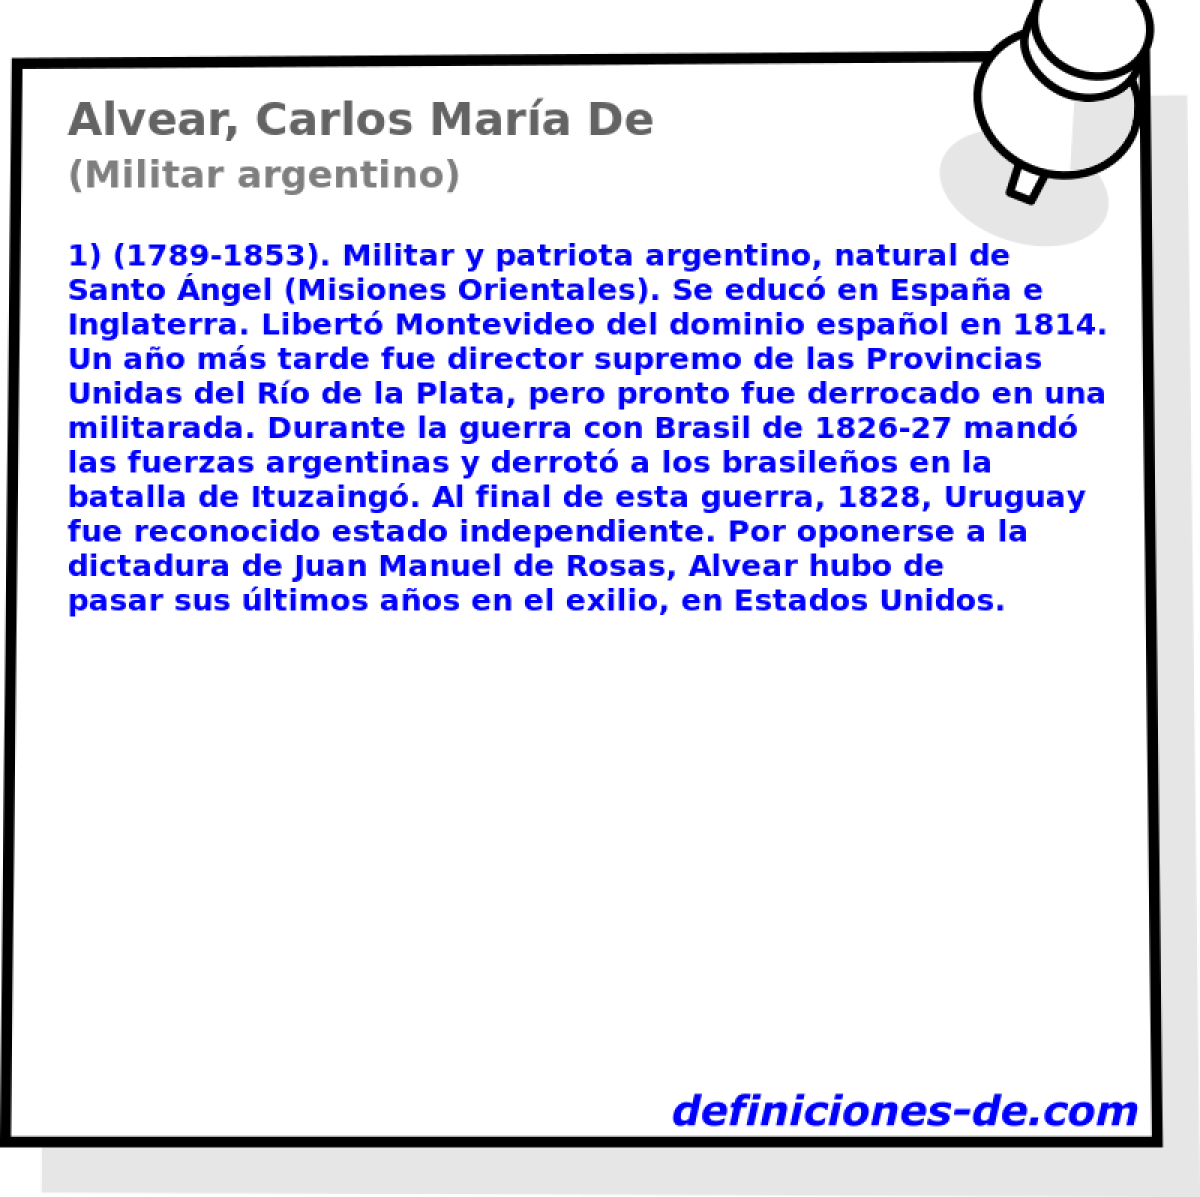 Alvear, Carlos Mara De (Militar argentino)